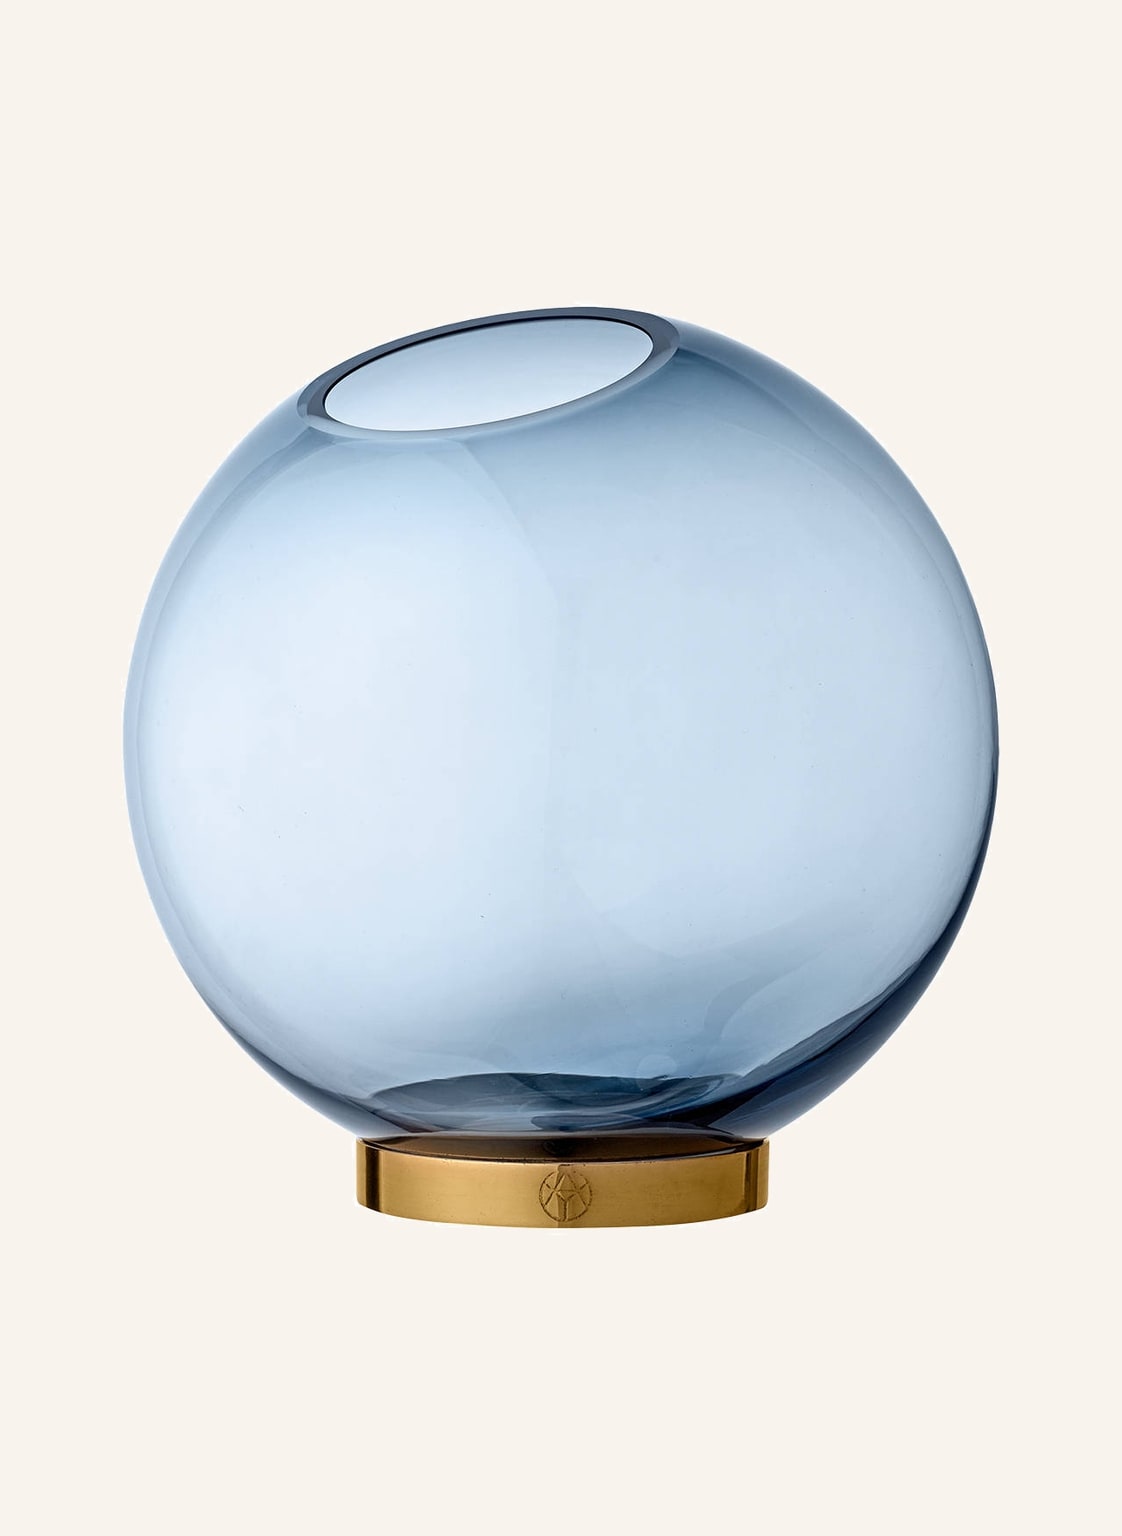 Image of Aytm Vase Globe Large blau